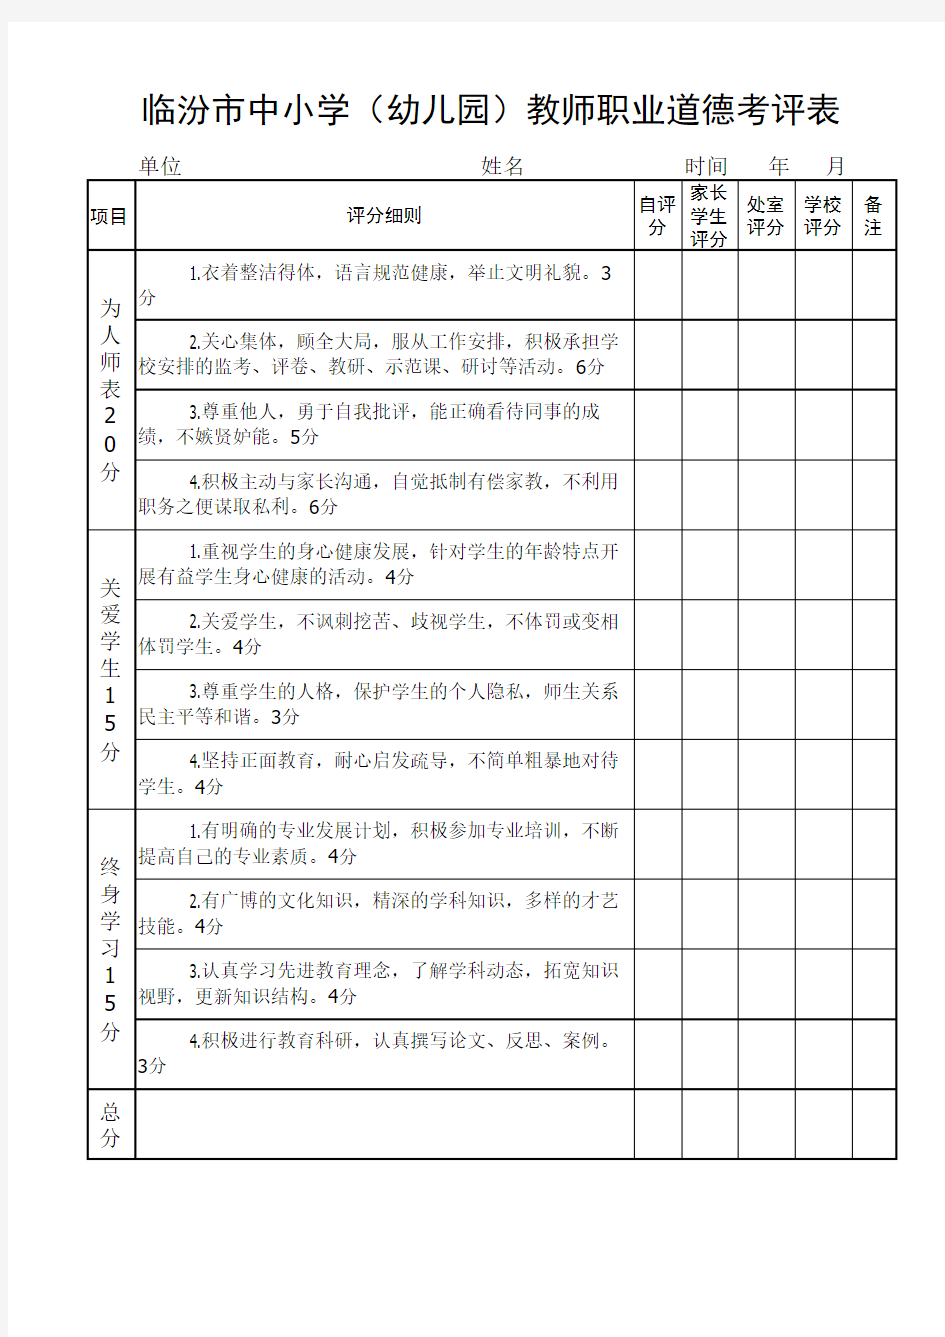 临汾市中小学(幼儿园)教师职业道德考评表